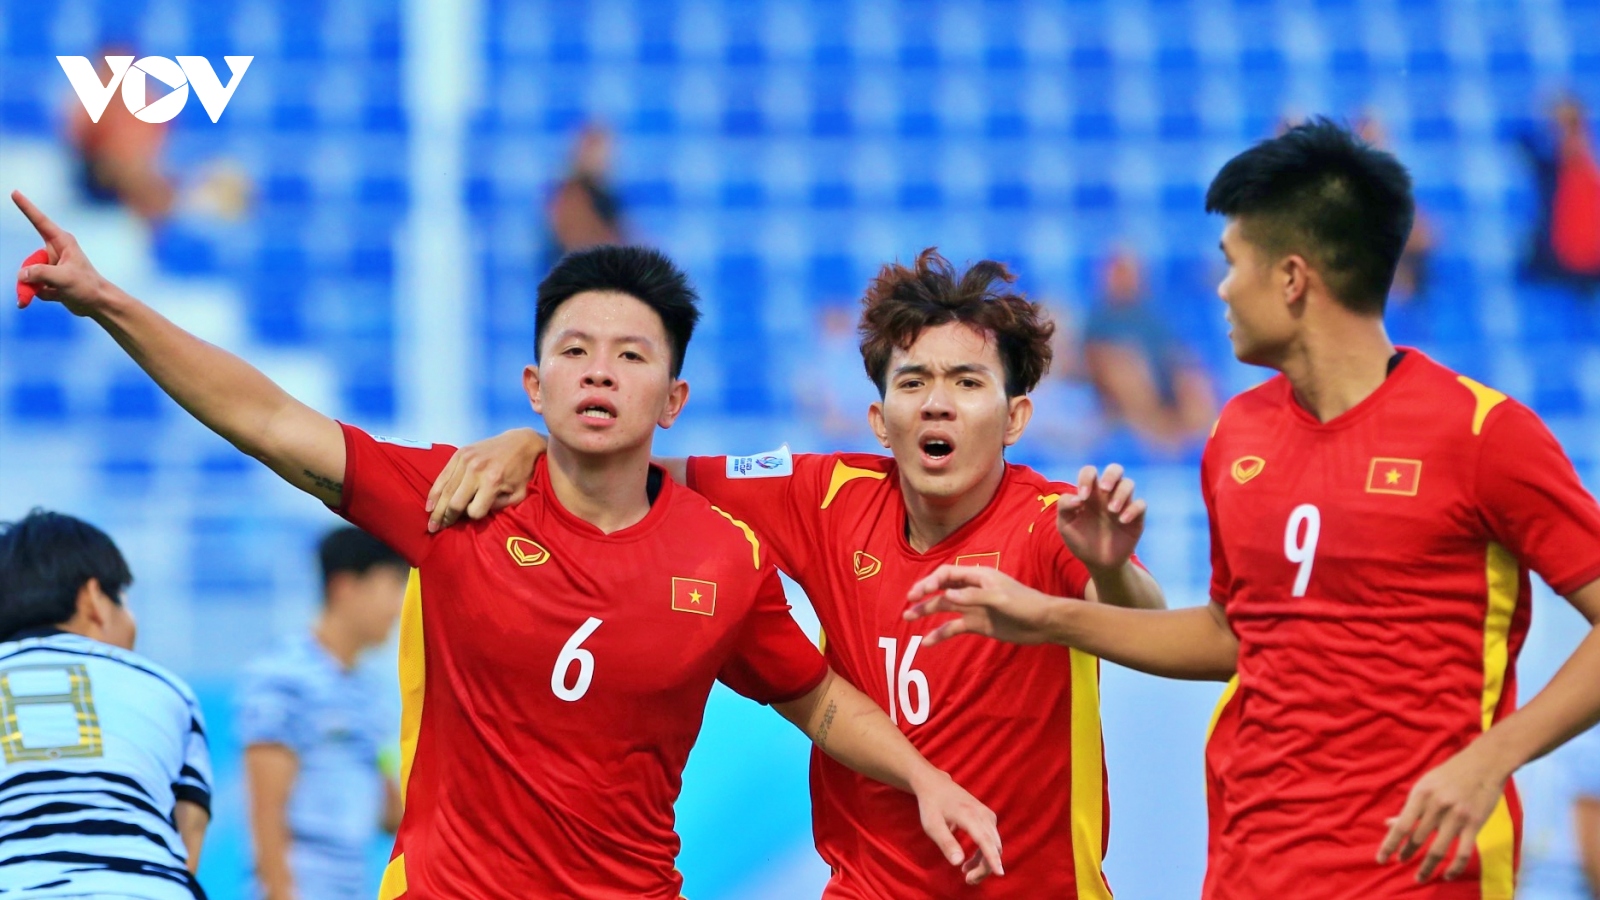 Báo Trung Quốc hết lời khen ngợi U23 Việt Nam và lo cho bóng đá nước nhà